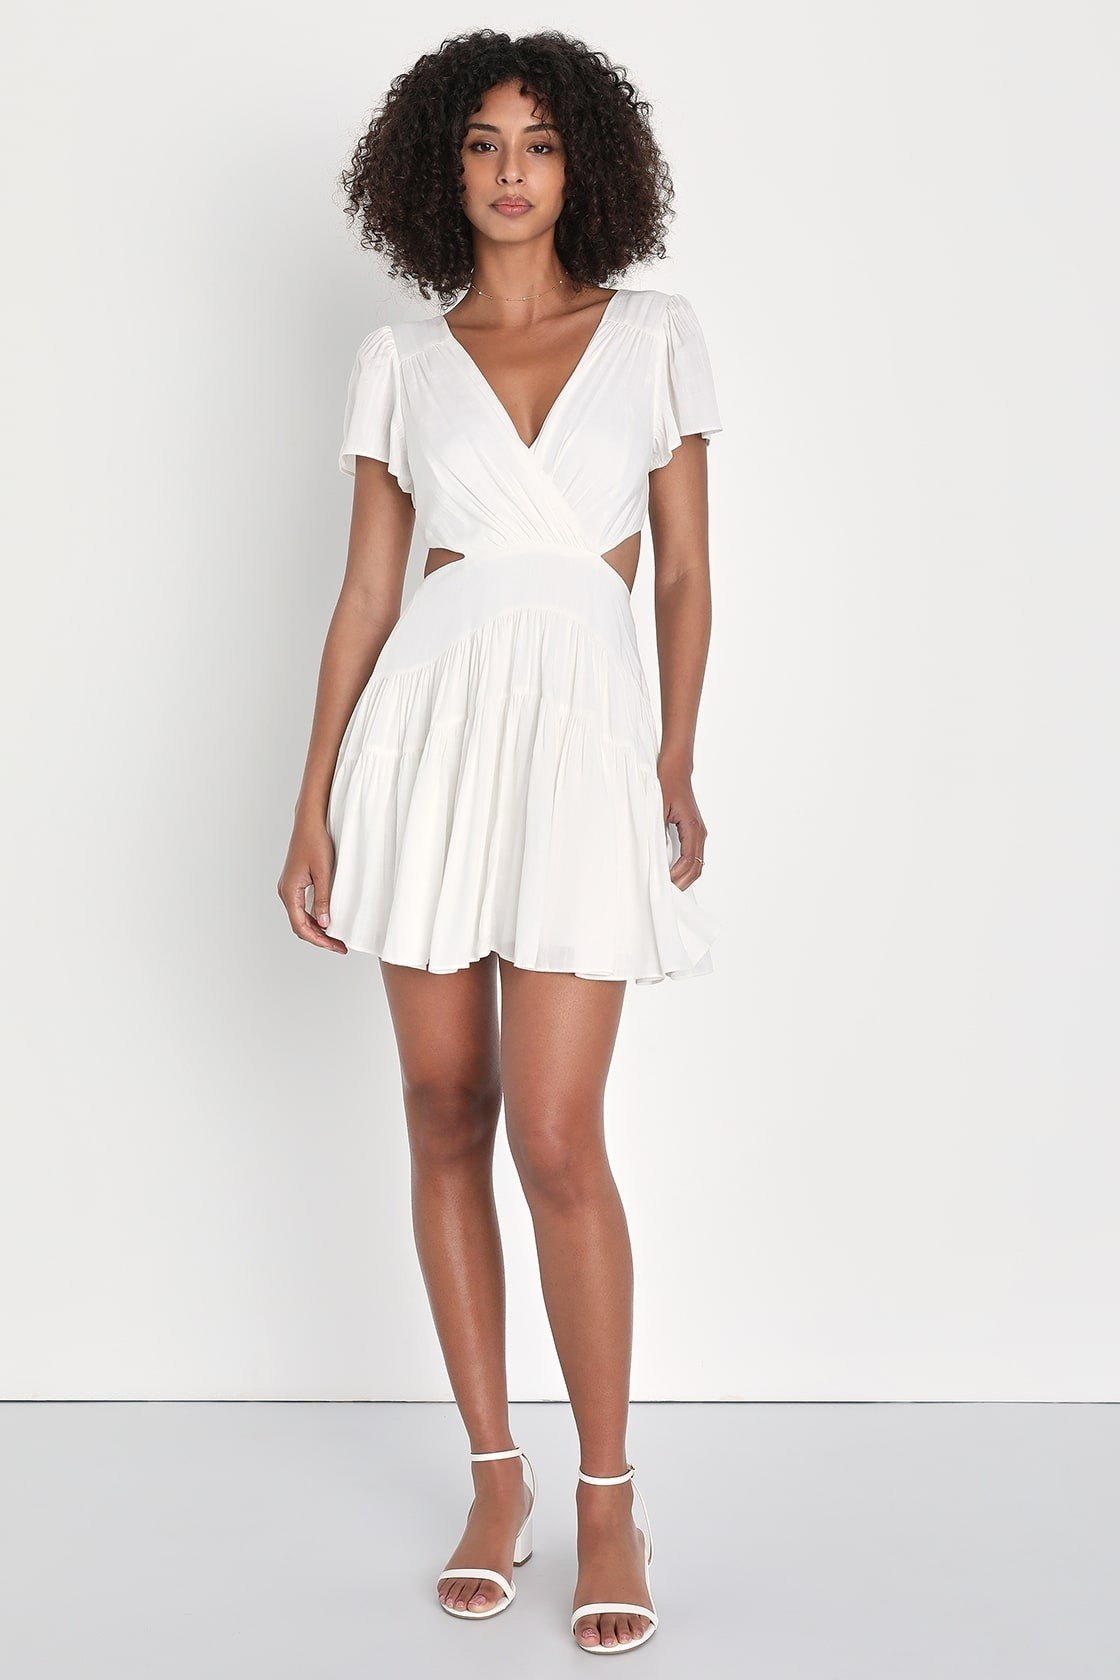 Model wearing white cut-out flutter sleeve mini dress